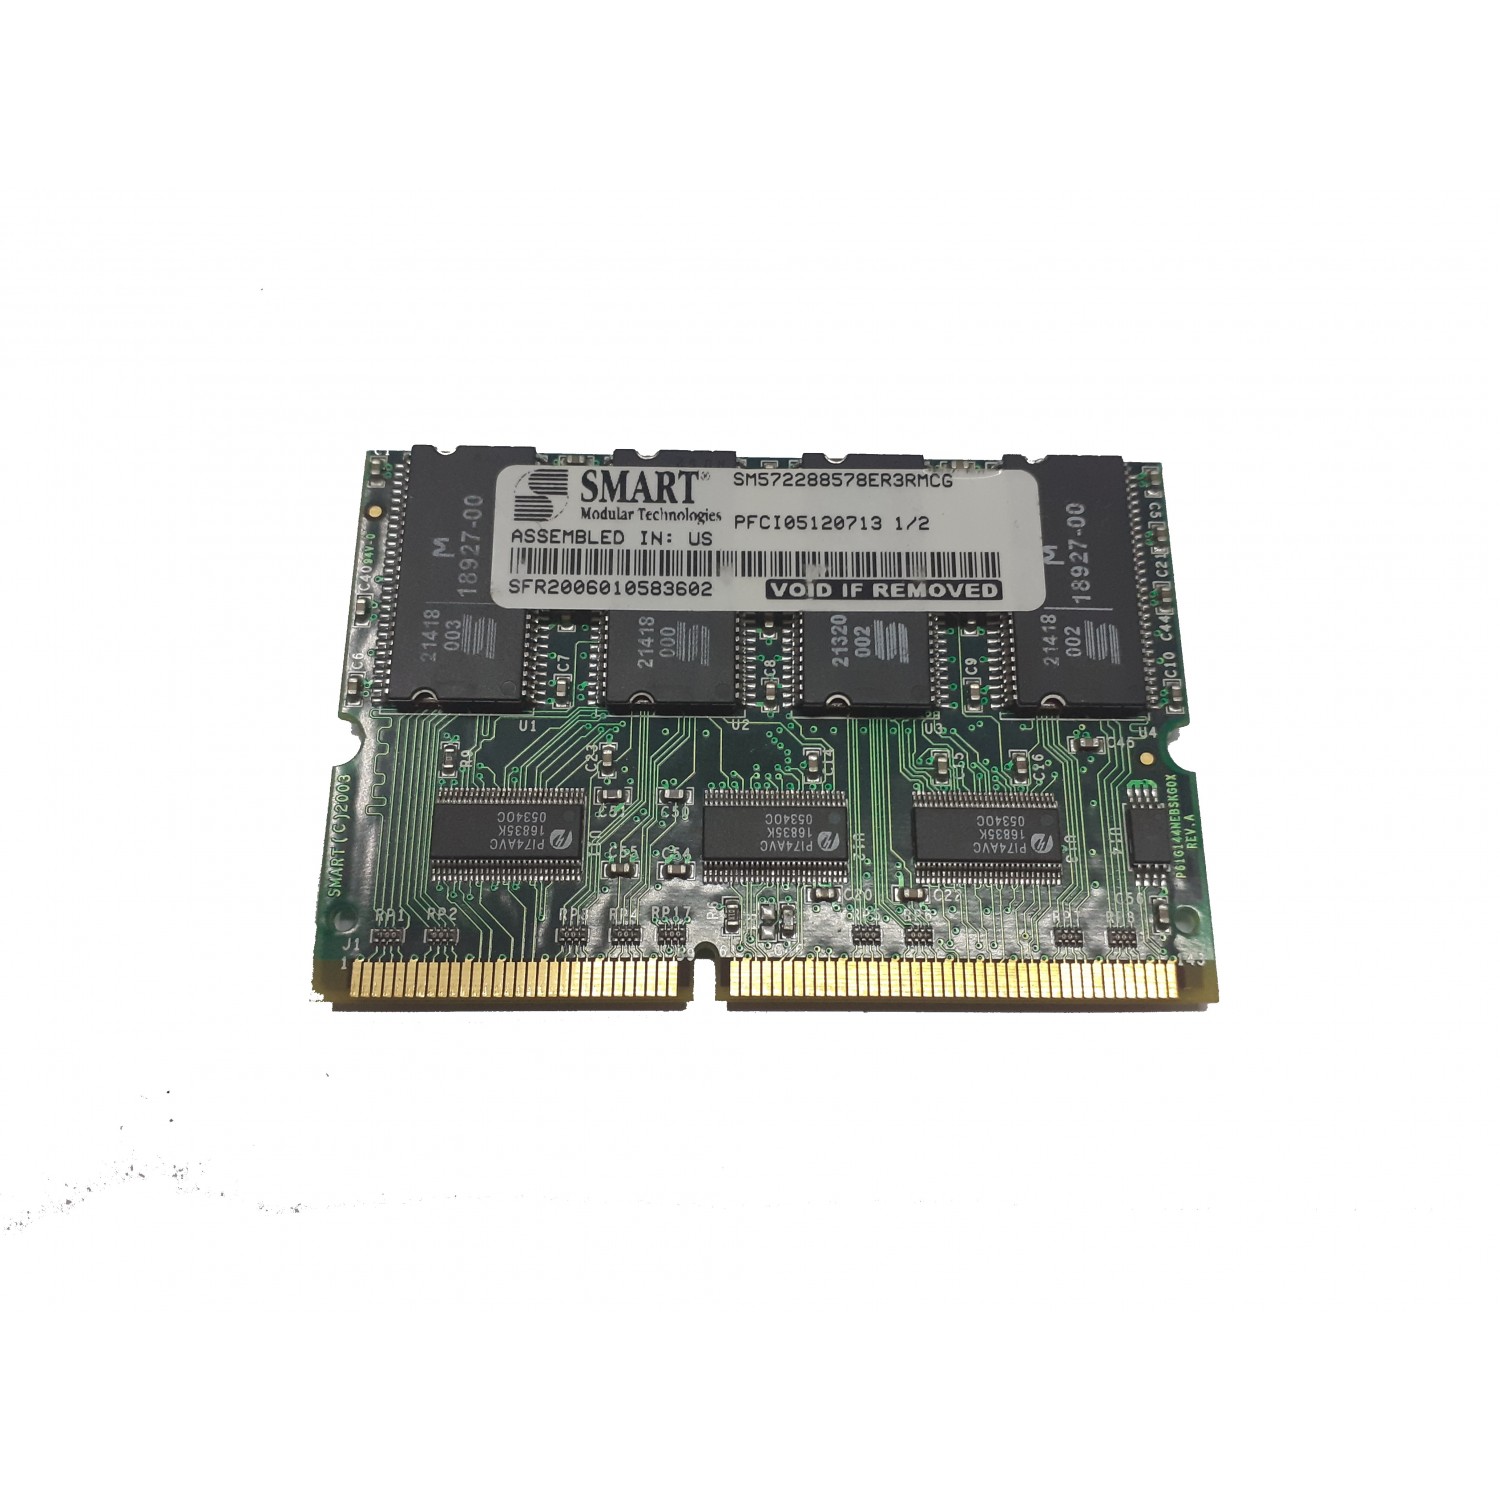 Modul memorie Cisco Smart 1GB 144p PC133 CL3 18c 64x8 Registered ECC SDRAM SM572288578ER3RMCG Diverse Server